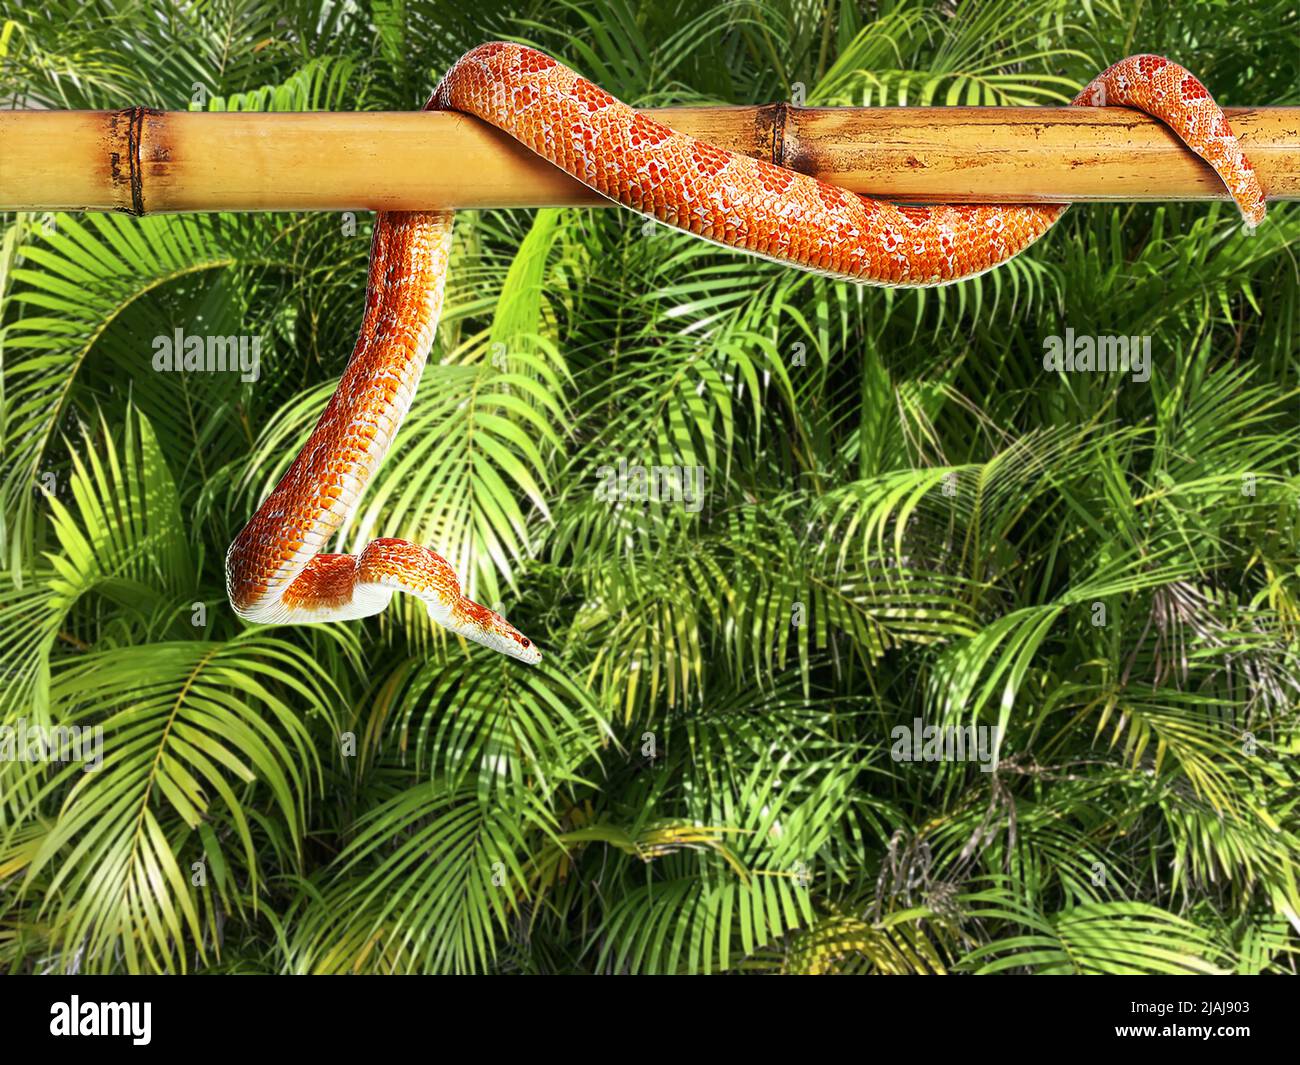 Serpente di mais su bastone di bambù contro foglie tropicali verdi Foto Stock